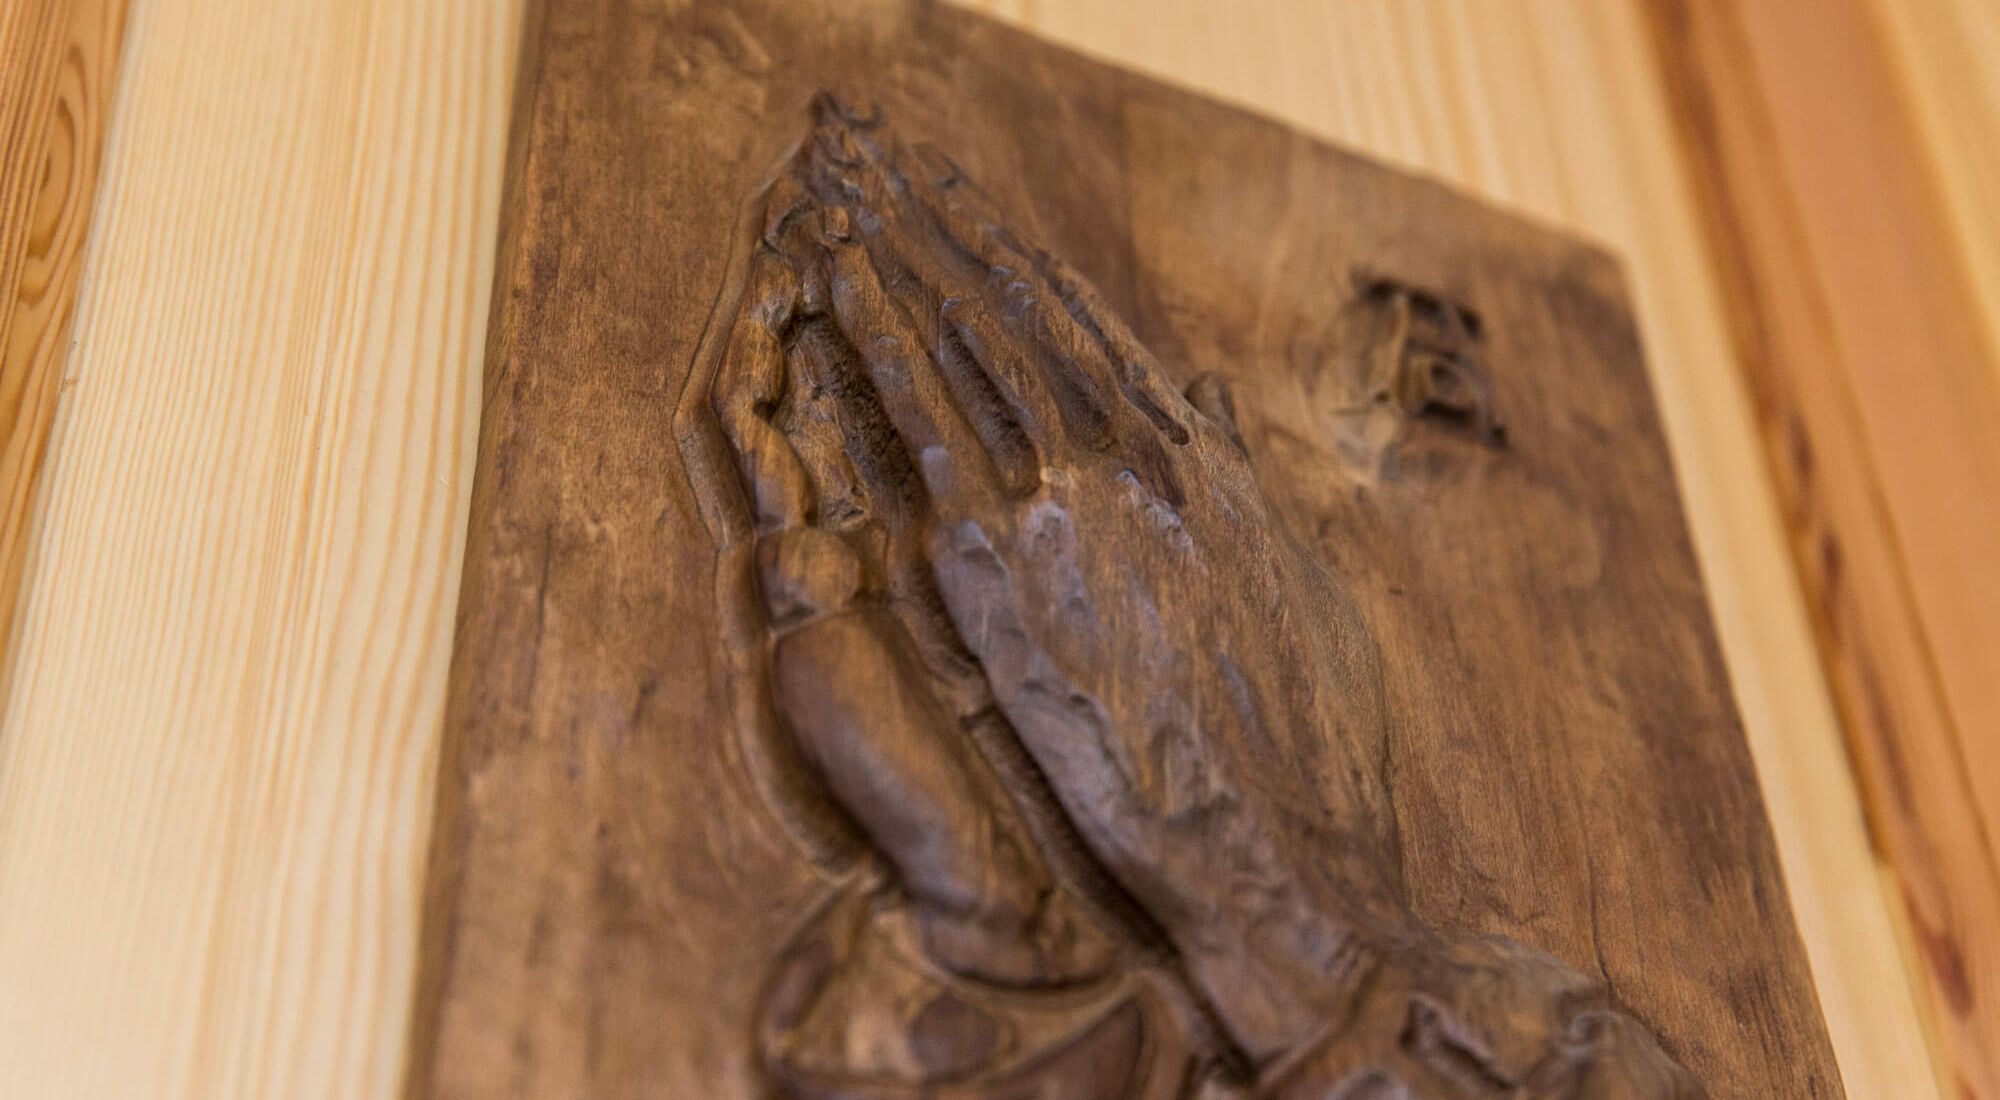 Holzbild mit betenden Händen an einer Holztür